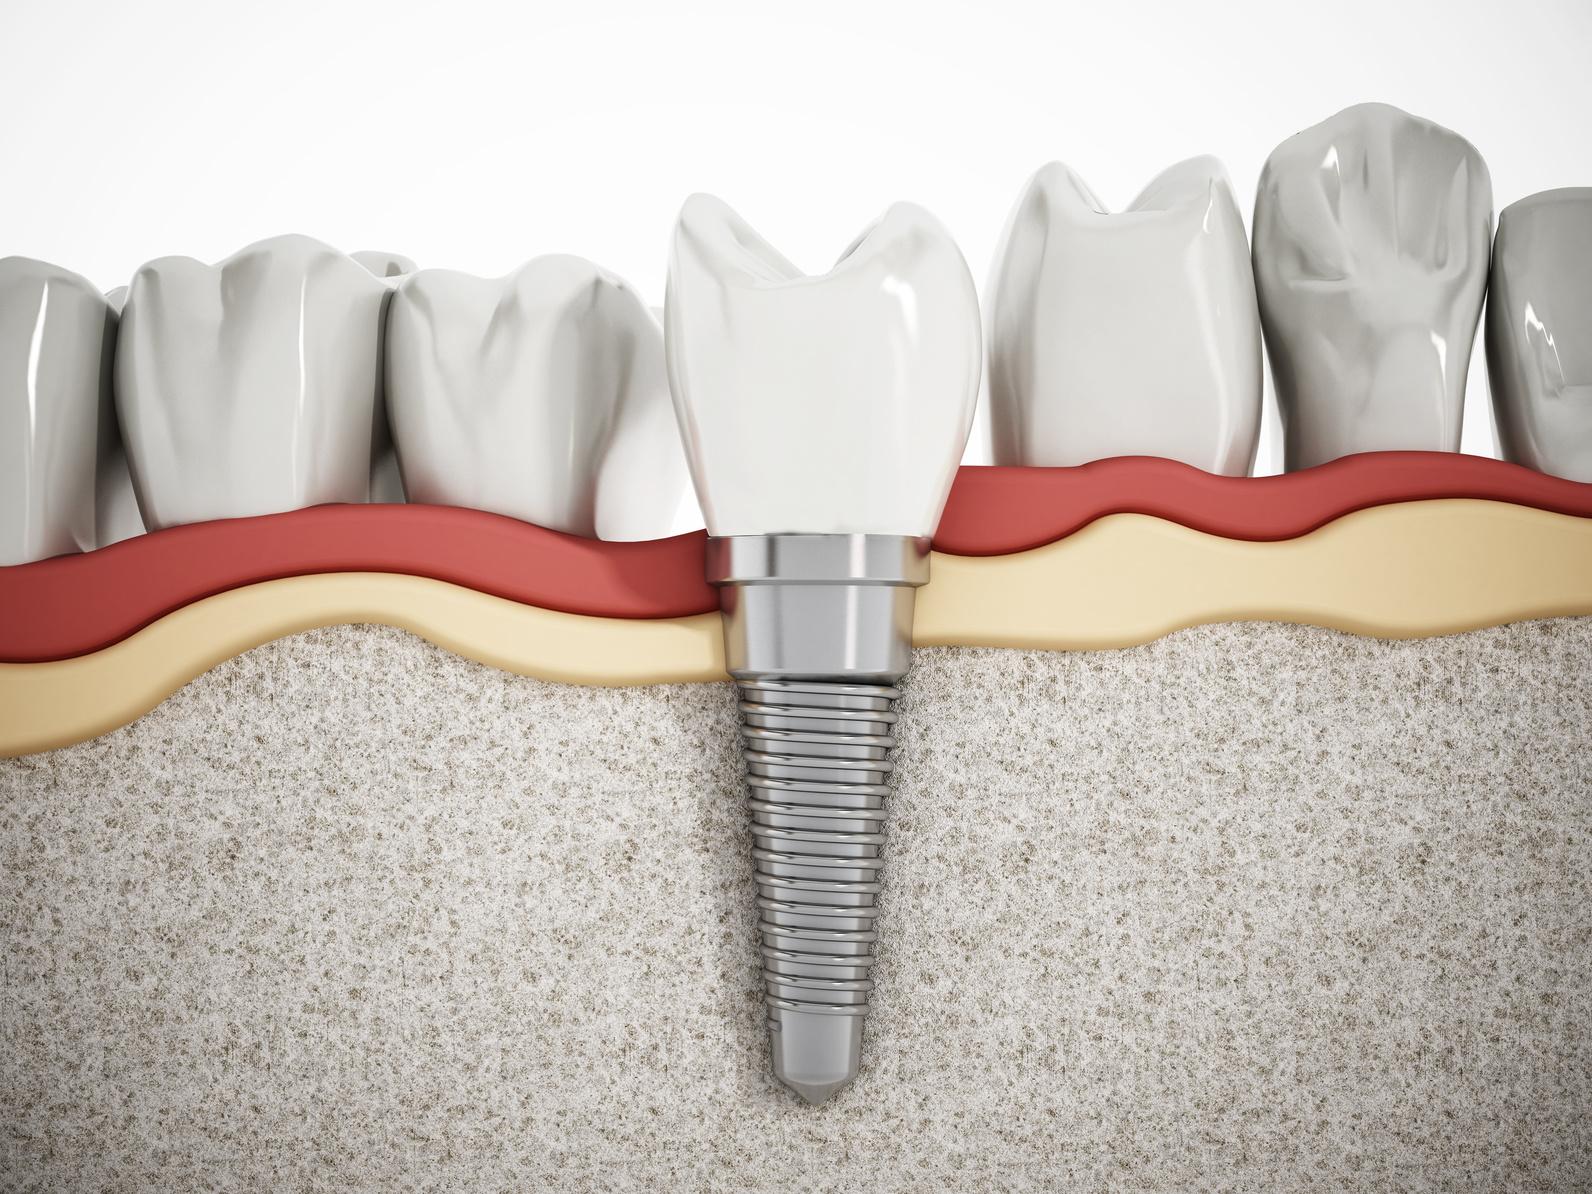 Răng Implant thay thế 1 răng hỗ trợ ăn nhai vượt trội hơn so với cầu răng sứ hoặc răng tháo lắp